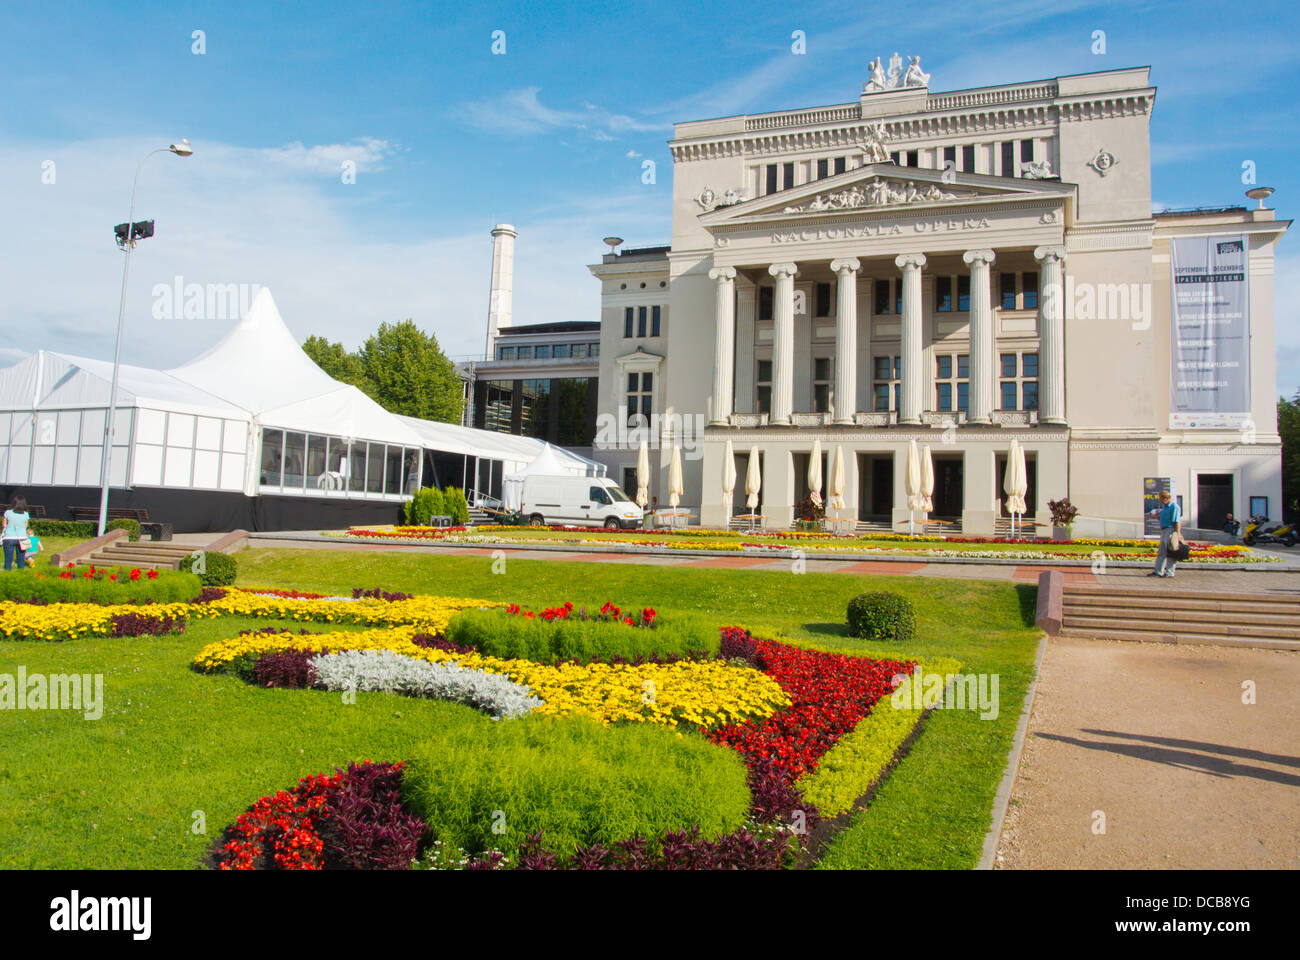 Bâtiment de l'Opéra National de Lettonie Riga central des Etats baltes Europe du nord Banque D'Images